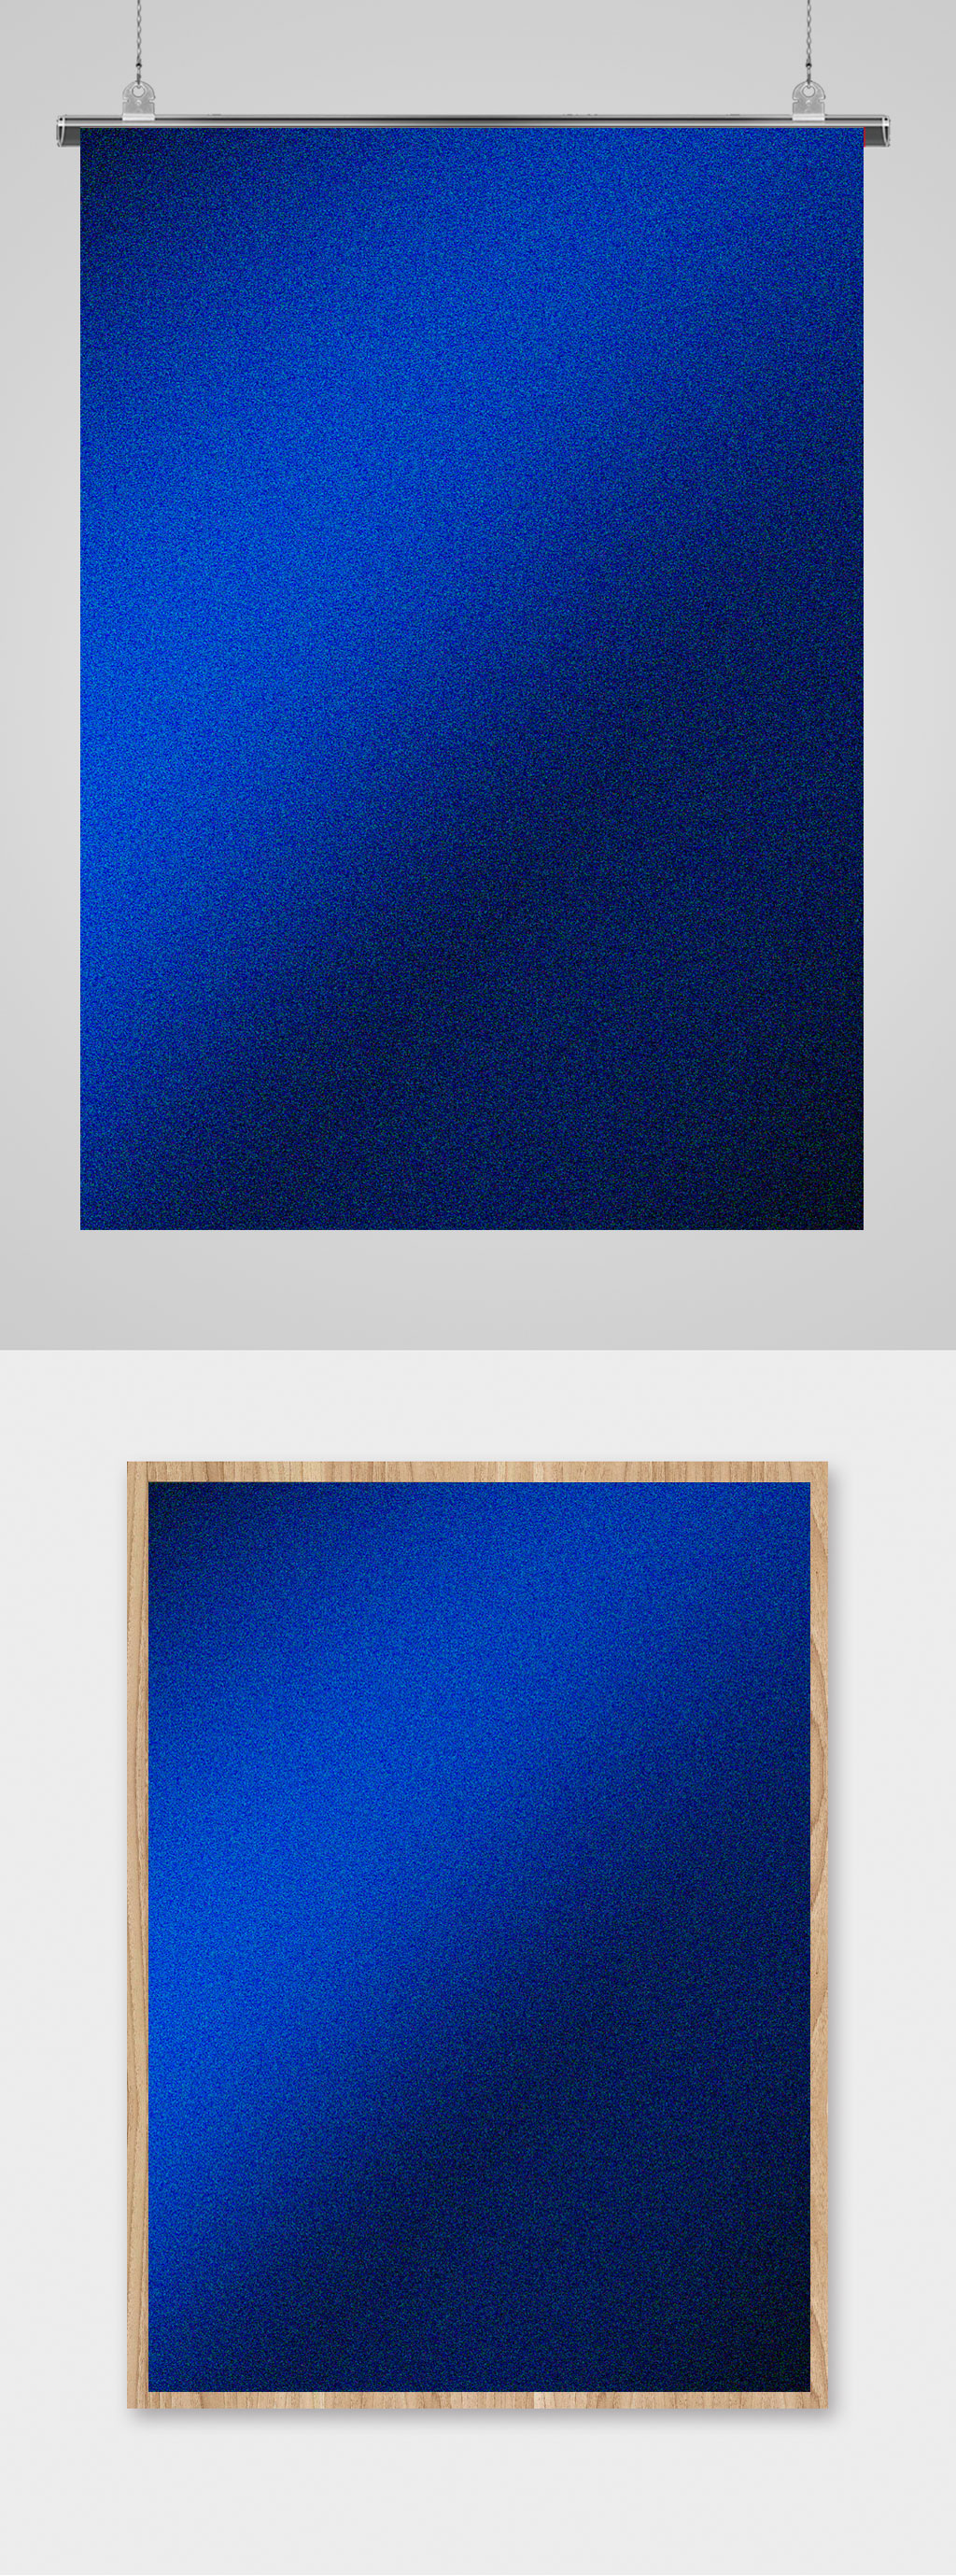 深蓝色手机壁纸 纯色图片